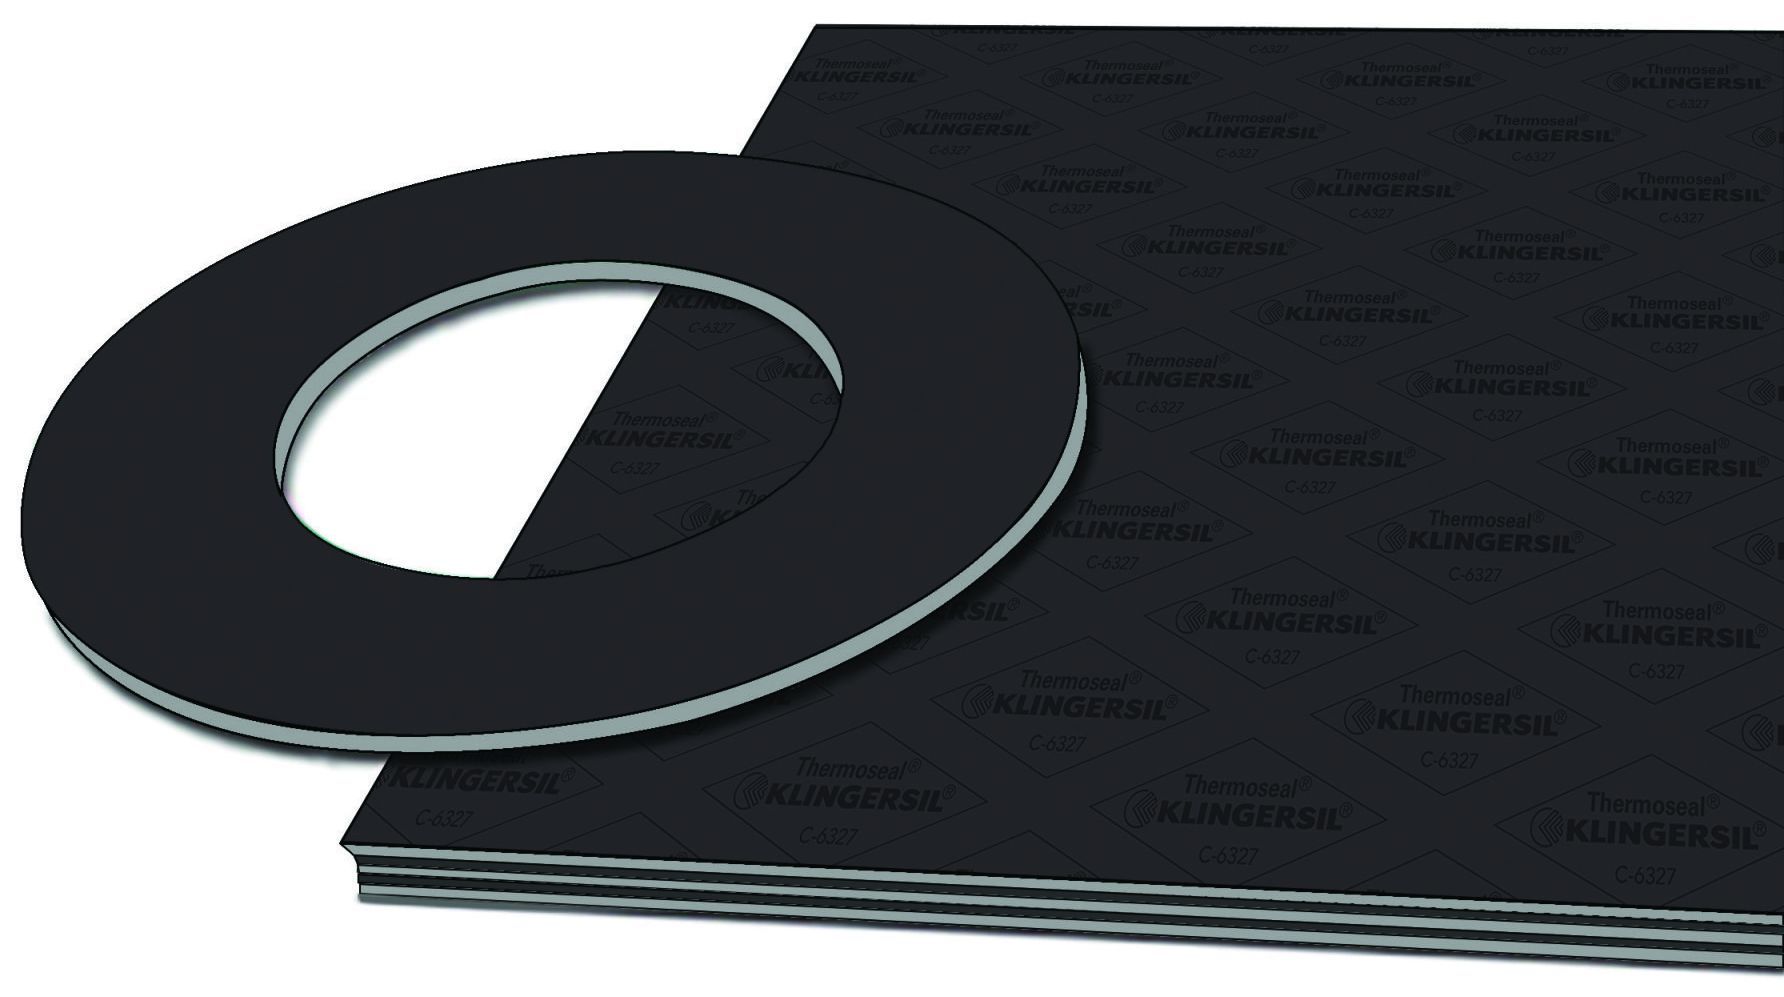 KLINGERSIL C-4401 compressed fiber sheet material with cut gasket